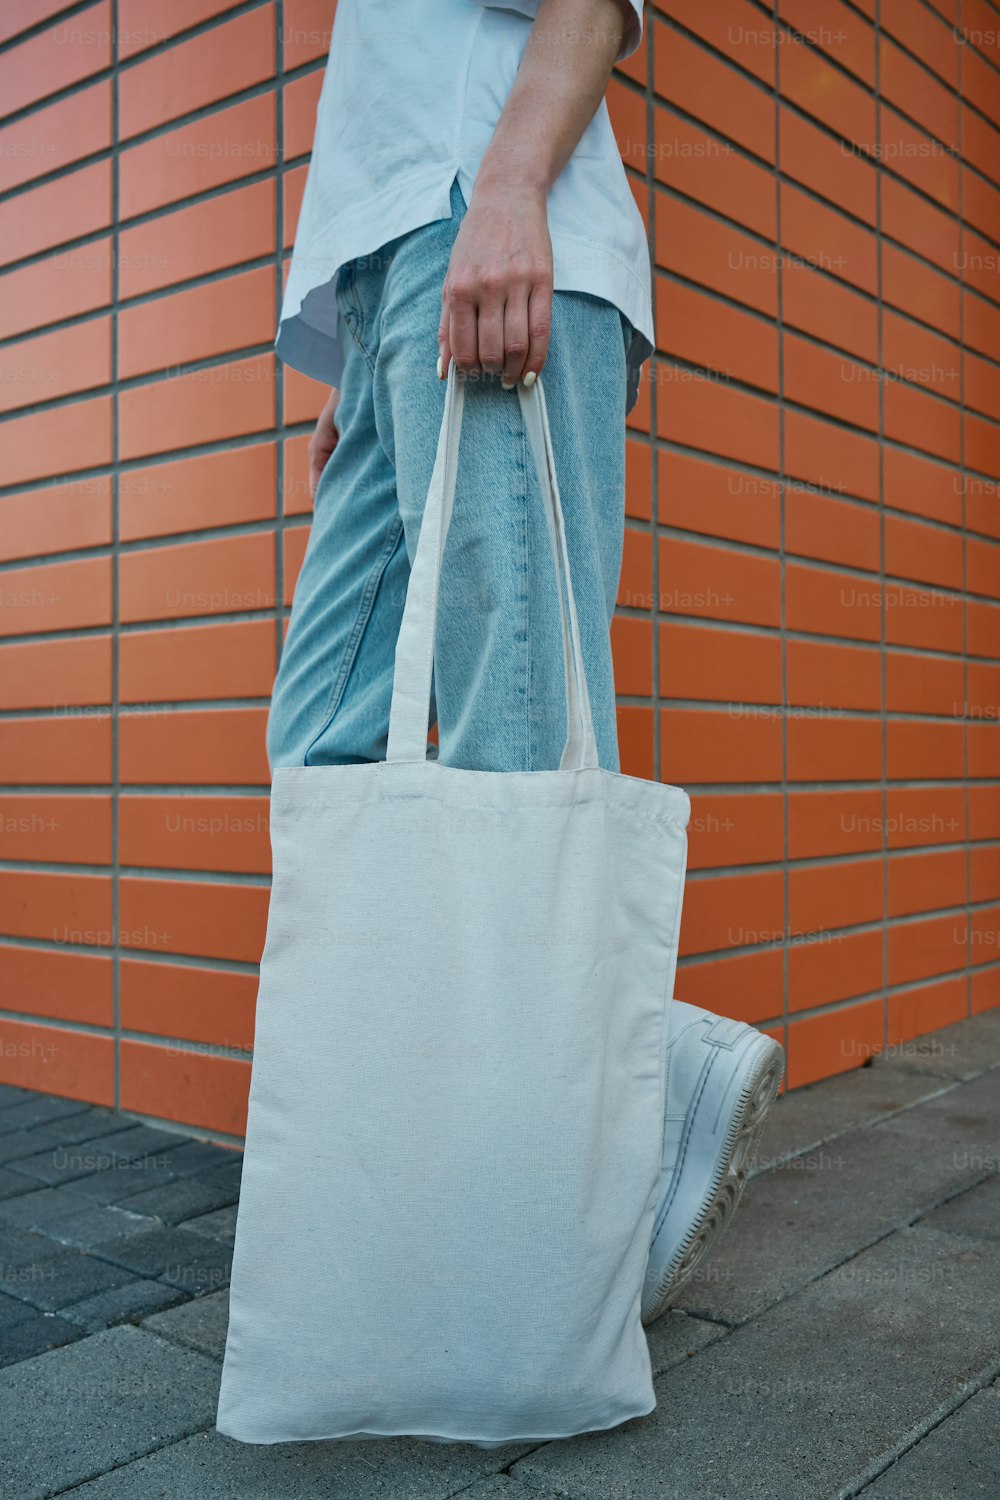 uma pessoa carregando um saco branco em uma calçada